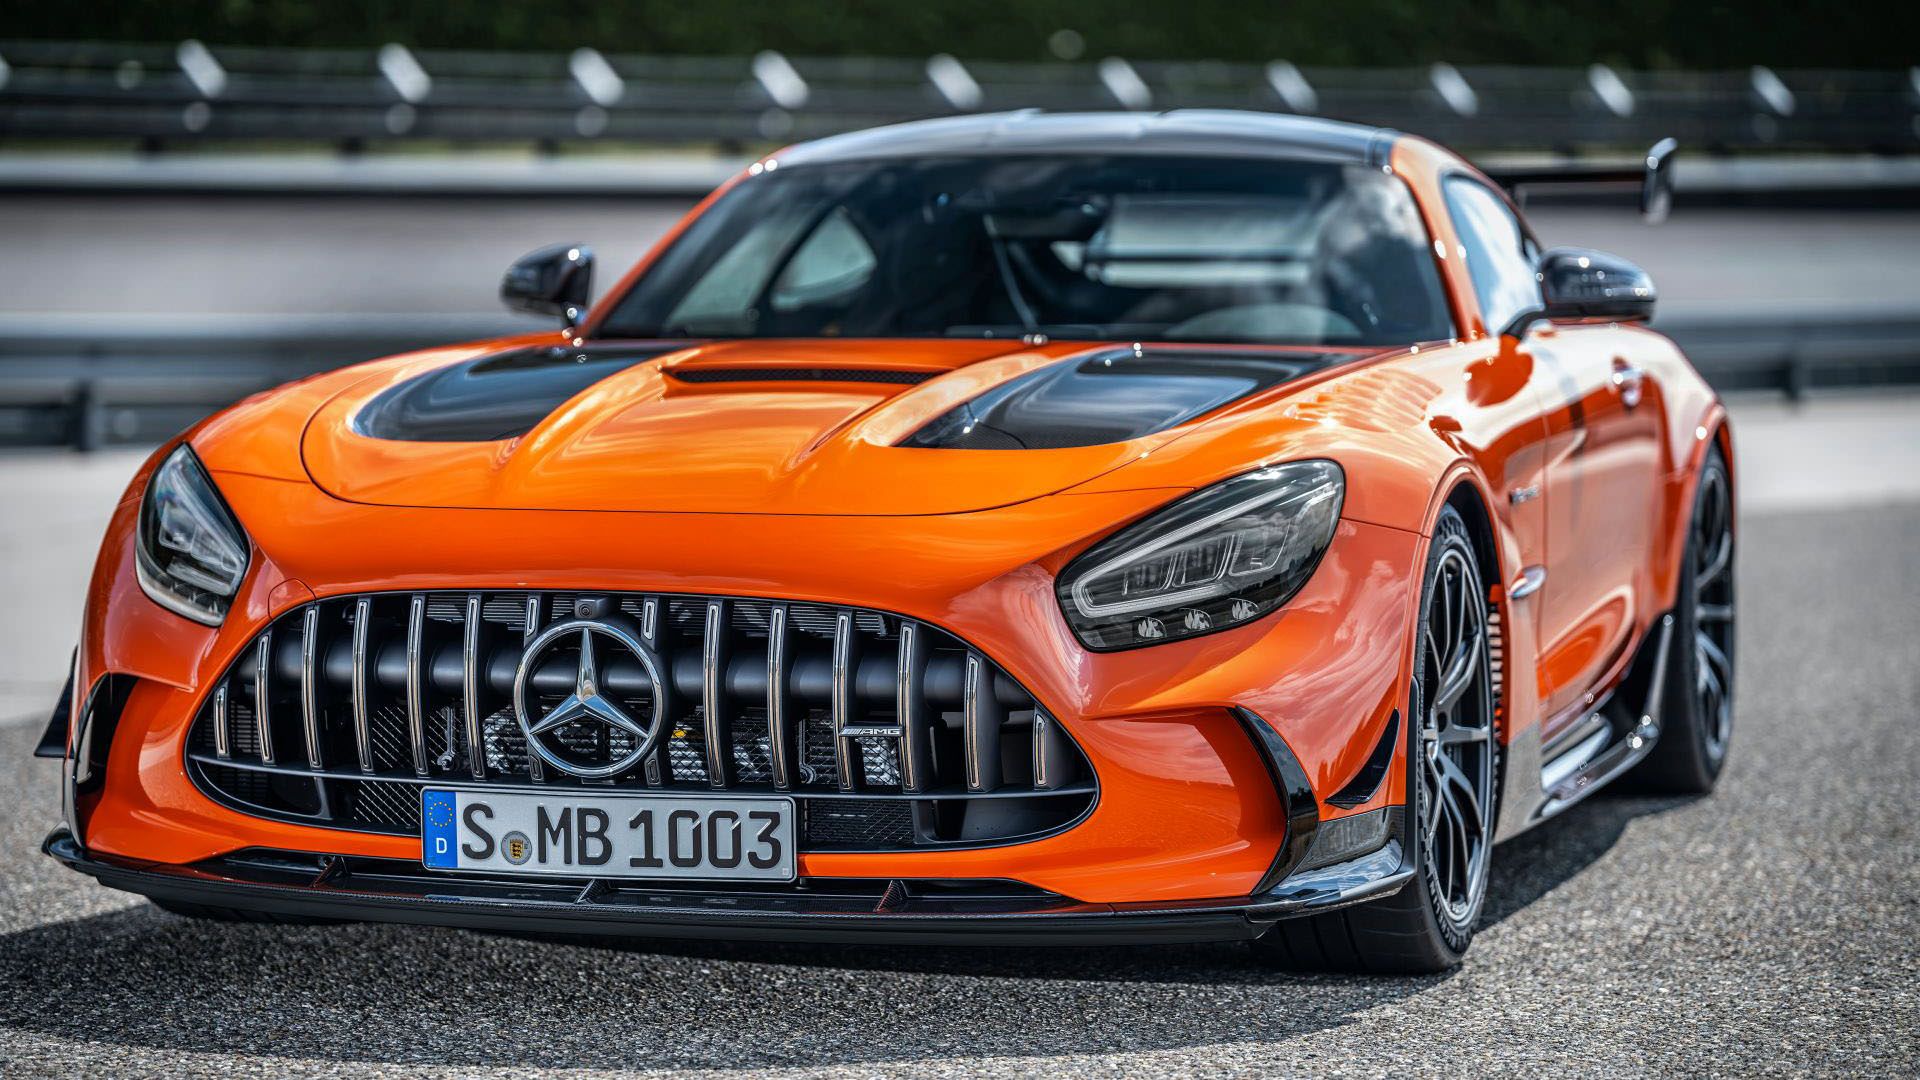 نمای جلو مرسدس amg gt سری بلک / Mercedes-AMG GT Black Series با رنگ نارنجی در پیست